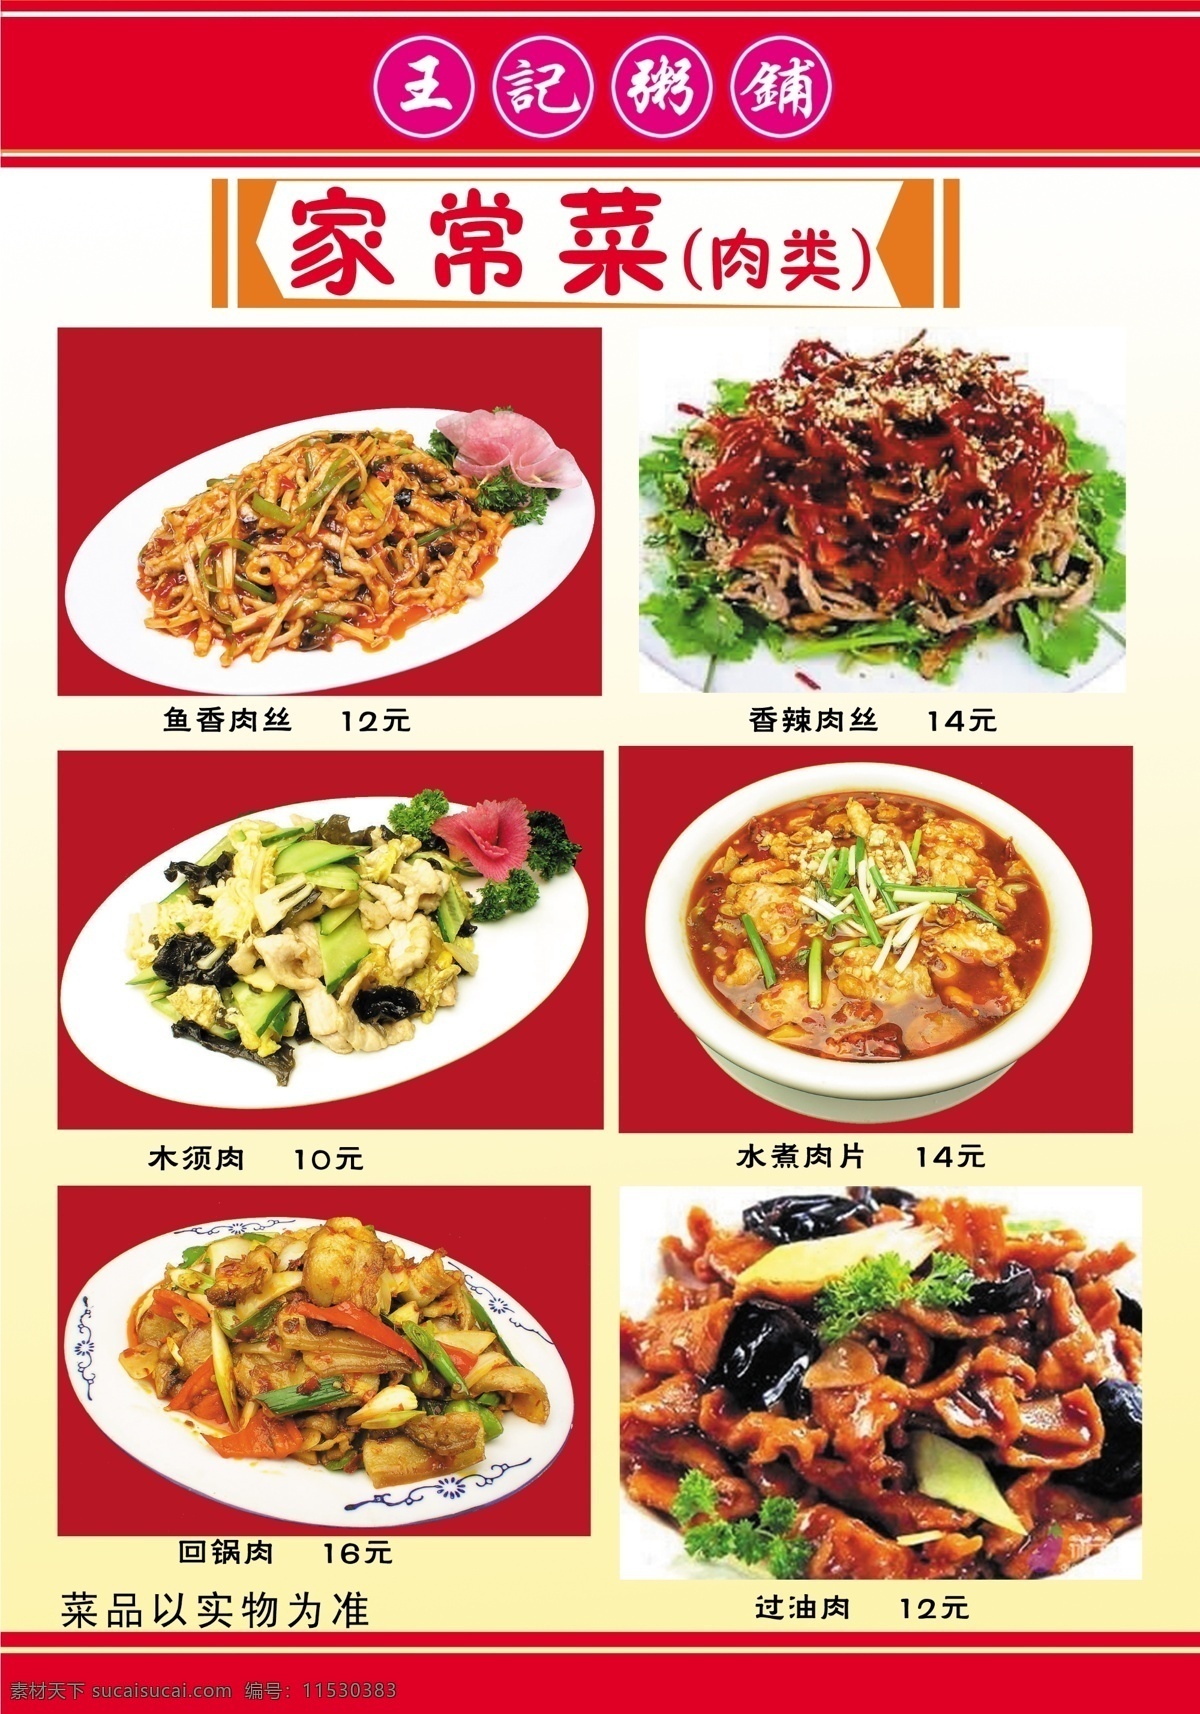 王 记 粥 铺 菜谱 食品餐饮 菜单菜谱 分层psd 平面广告 海报 设计素材 平面模板 psd源文件 白色